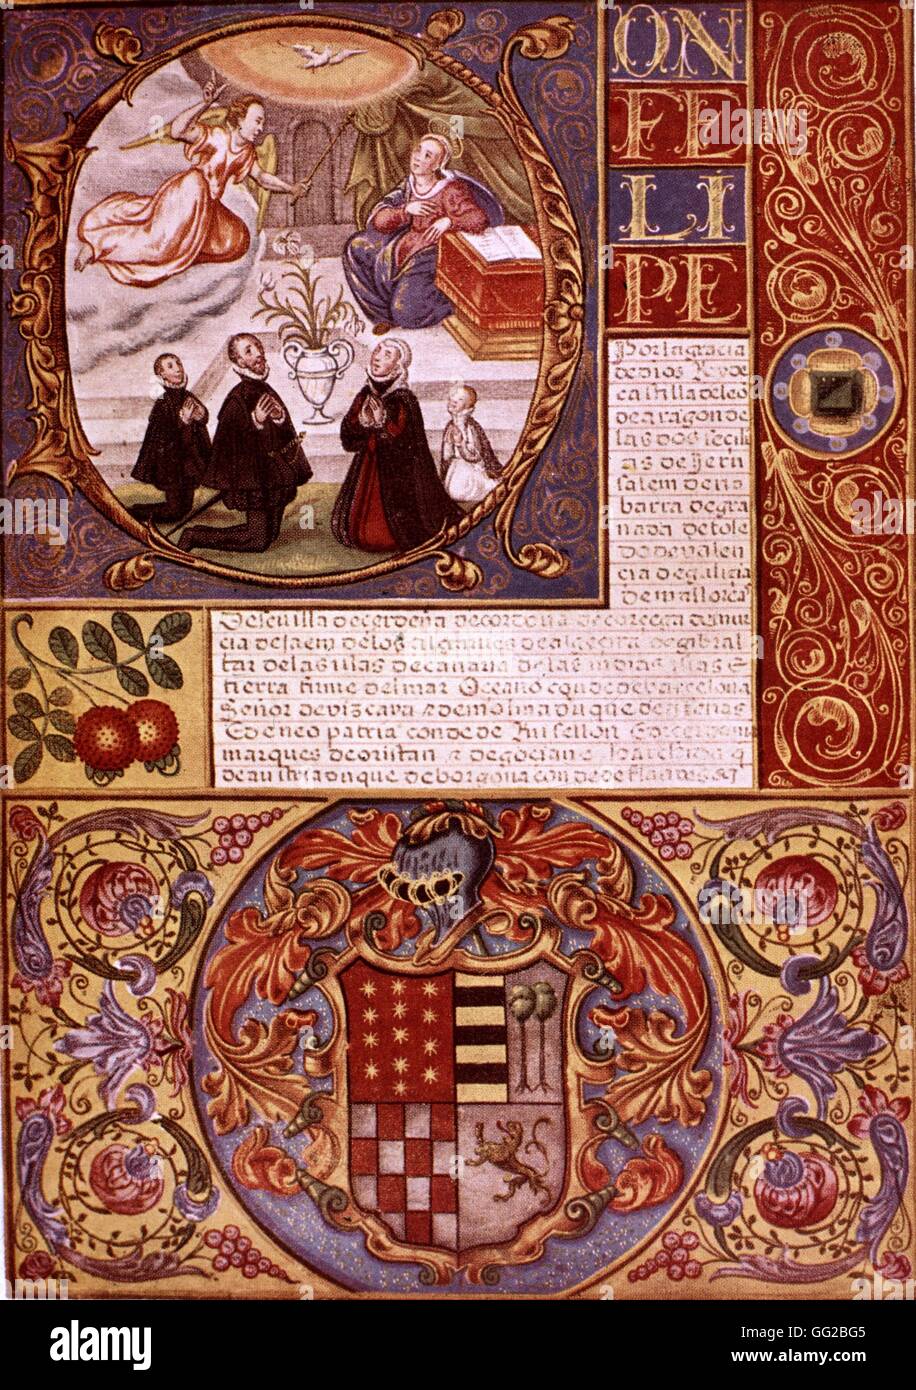 Anonyme, Jean de Salazar est donné une lettre de noblesse espagnole l'Espagne du 16ème siècle Banque D'Images